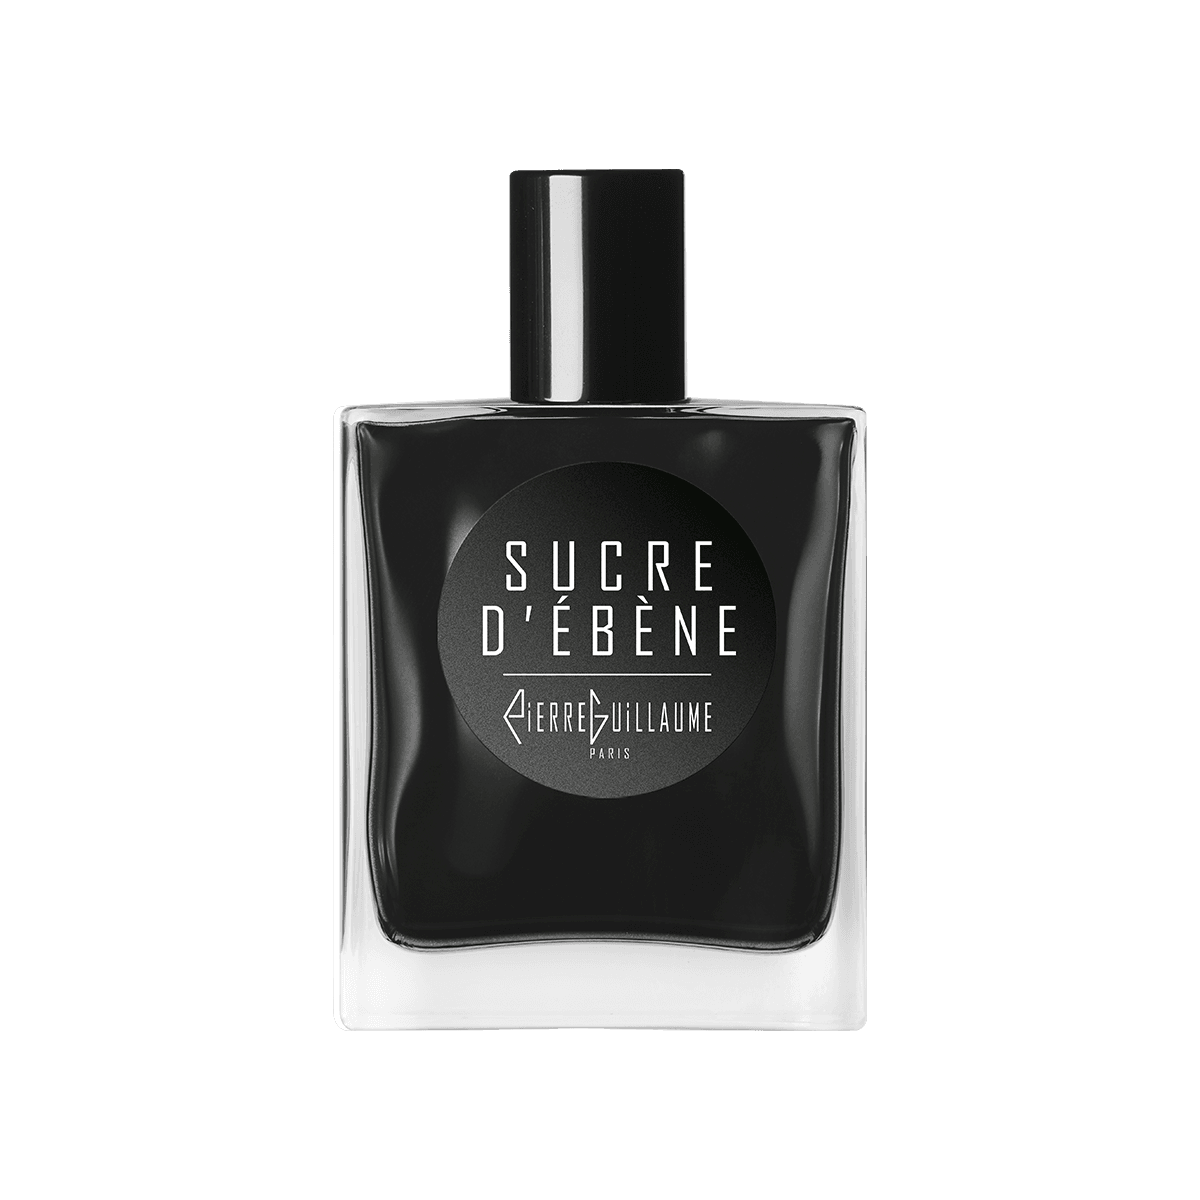 Pierre Guillaume Noire - Sucre d'ebene 50 ml | Perfume Lounge